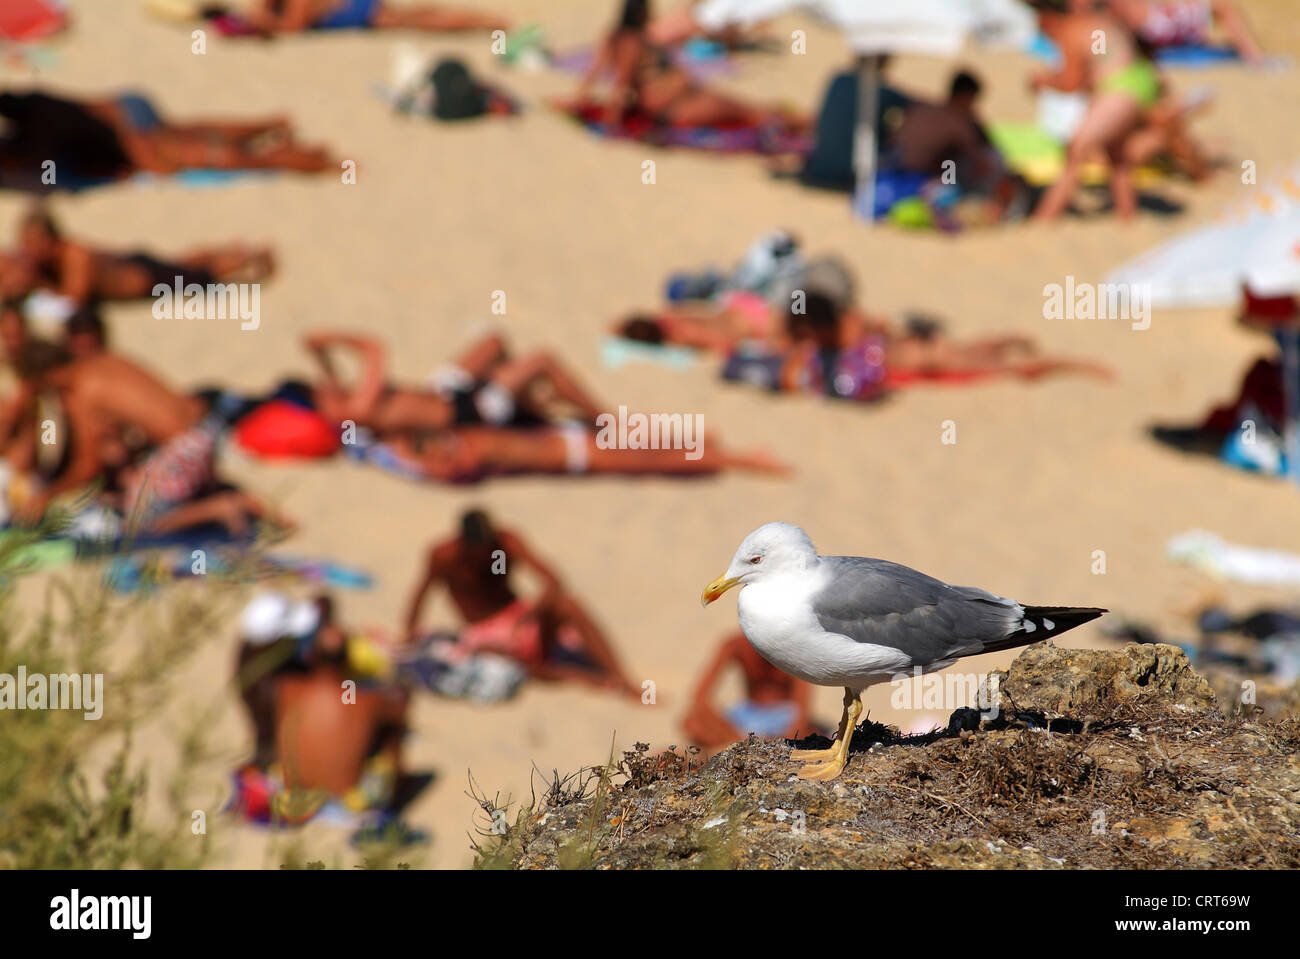 Seagull perched on a rock in Praia da Luz, Algarve, Portugal, Europe Stock Photo